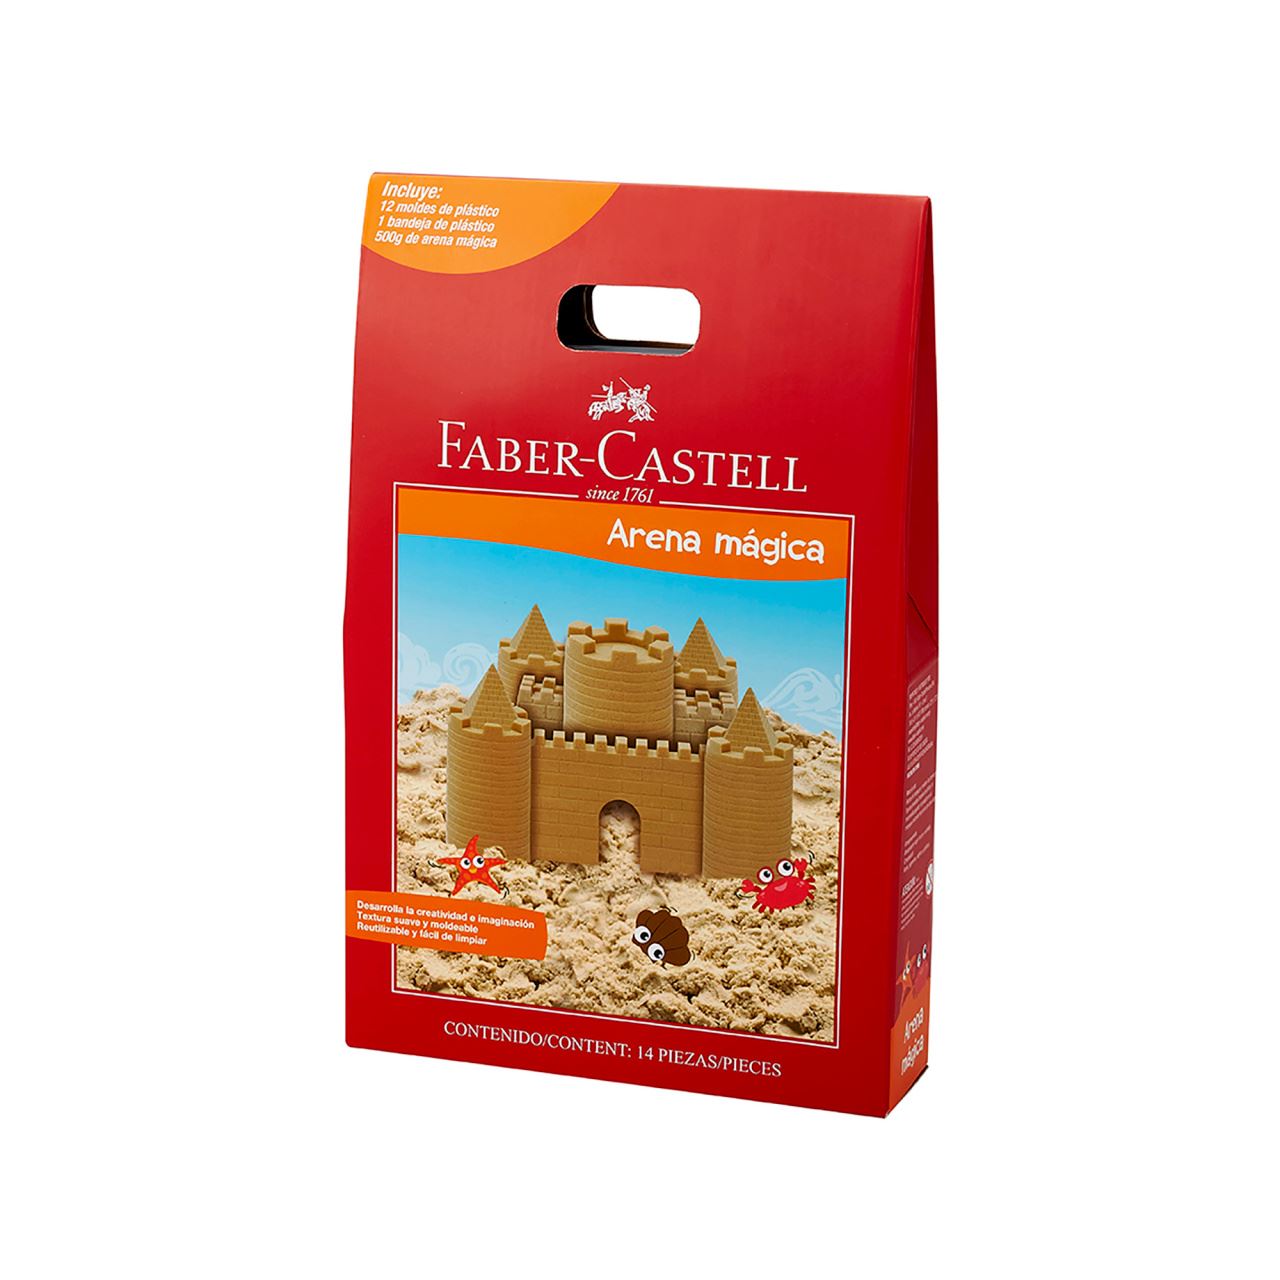 Faber-Castell - Arena mágica std 500g+12moldes+bandeja